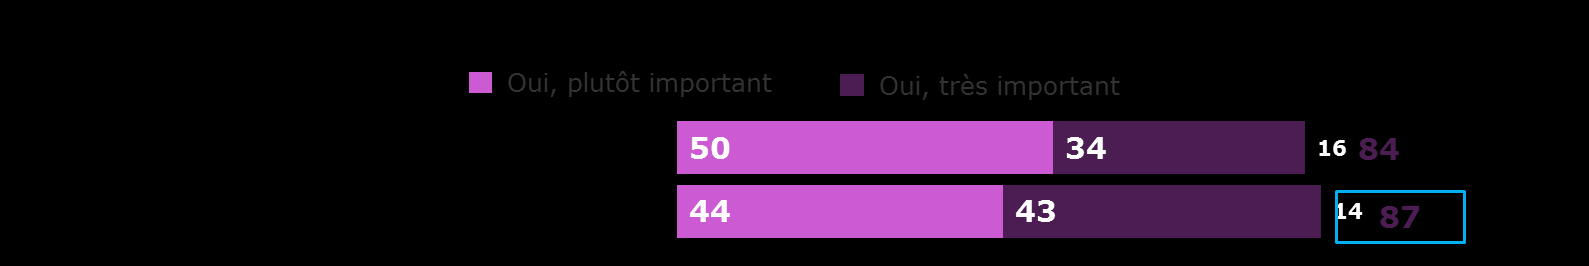 français (seuls 16% trouvent qu il fonctionne bien, contre 23% pour l échantillon miroir).